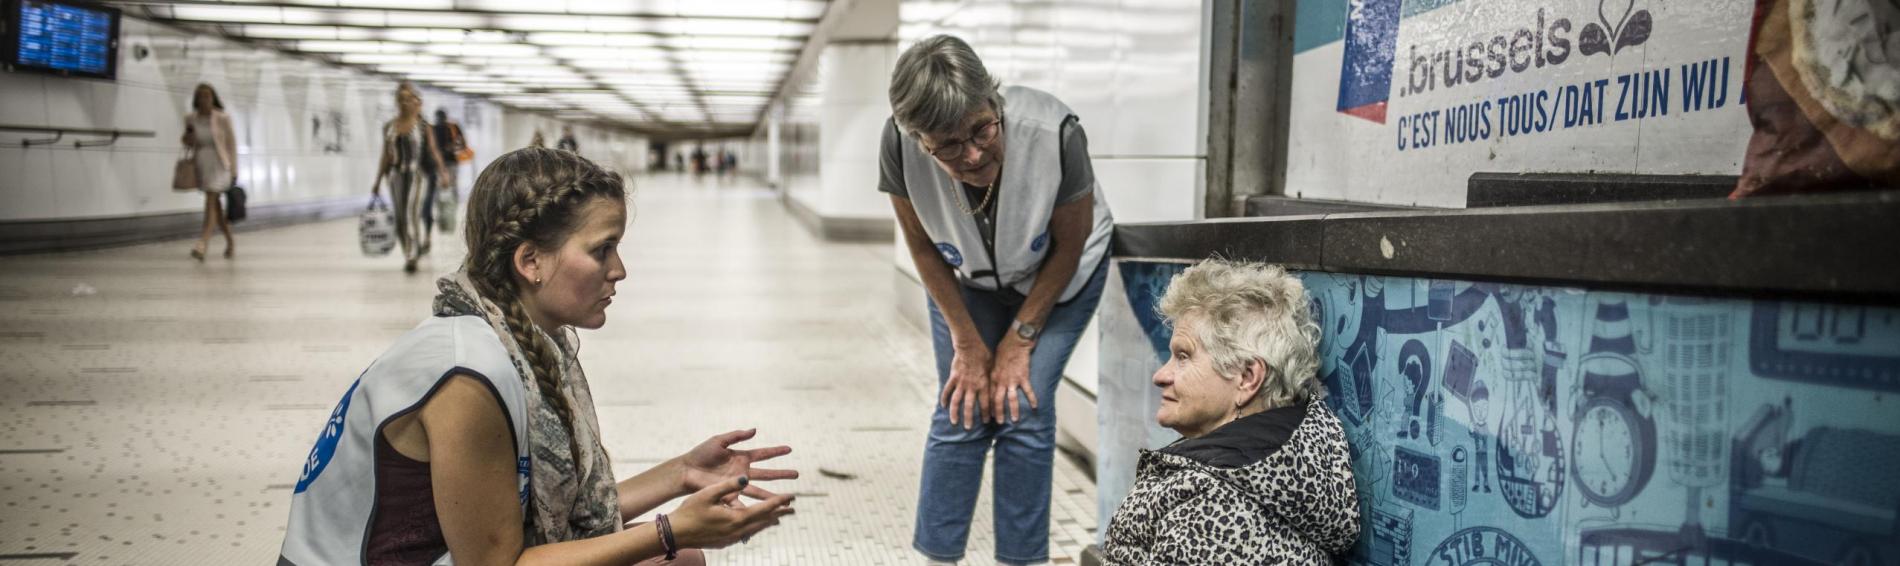 Twee medewerksters van Dokters van de Wereld zijn aan het werk in een metrohal. Ze zijn in gesprek met een oudere vrouw die op de grond zit bovenop een krant. Ze heeft kort wit haar en draagt een dikke, lange winterjas boven een roze jurk en wandelschoenen.